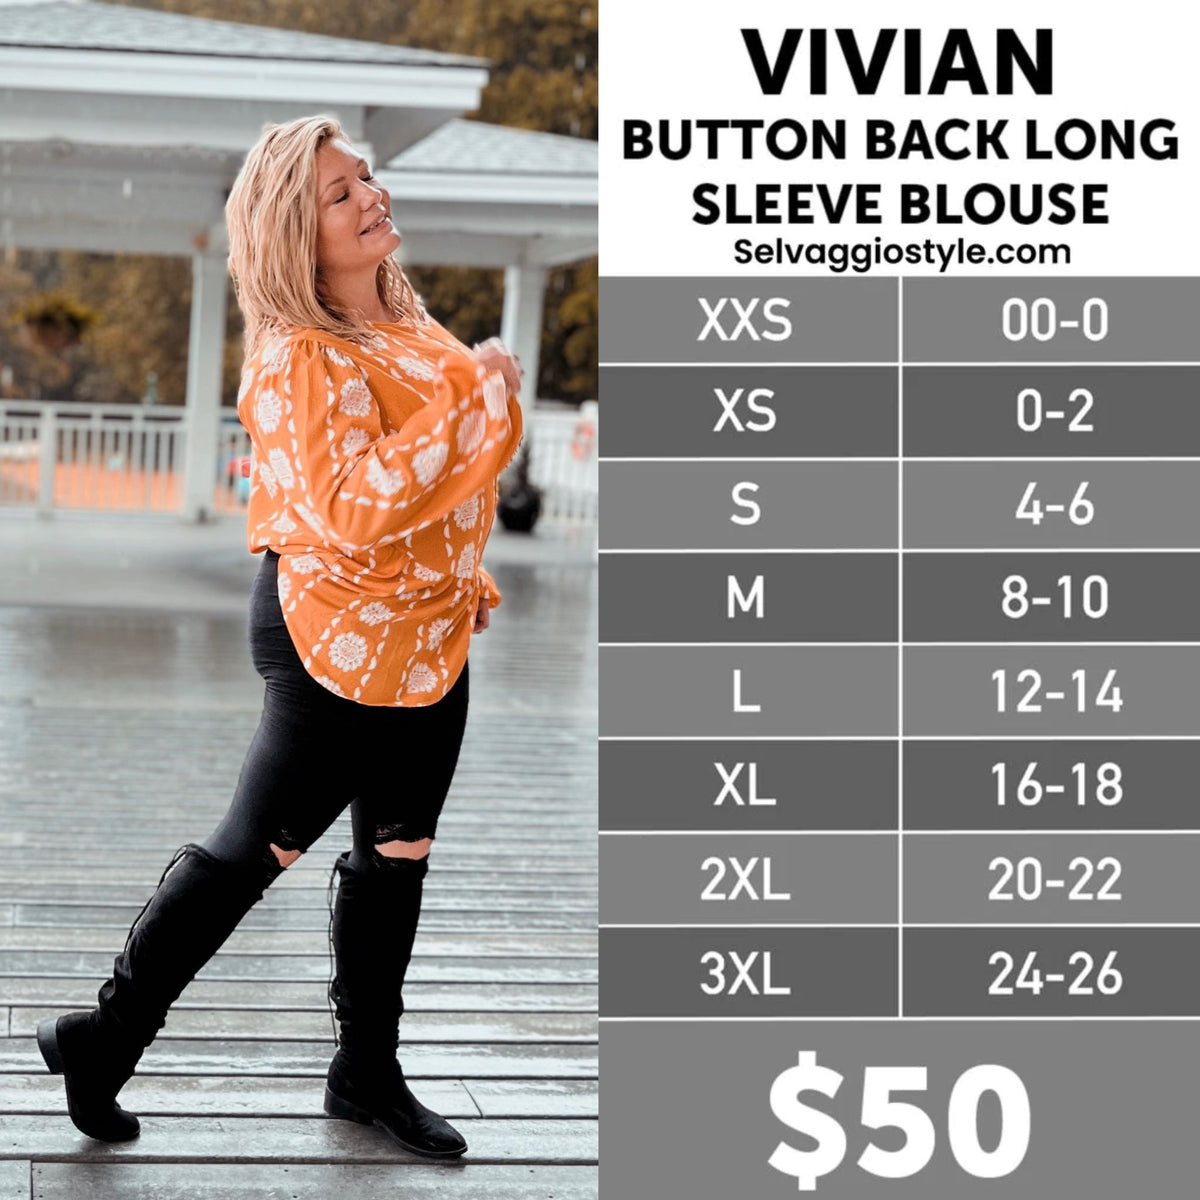 LuLaRoe Vivian Button Back Long Sleeve Blouse – Selvaggio Style